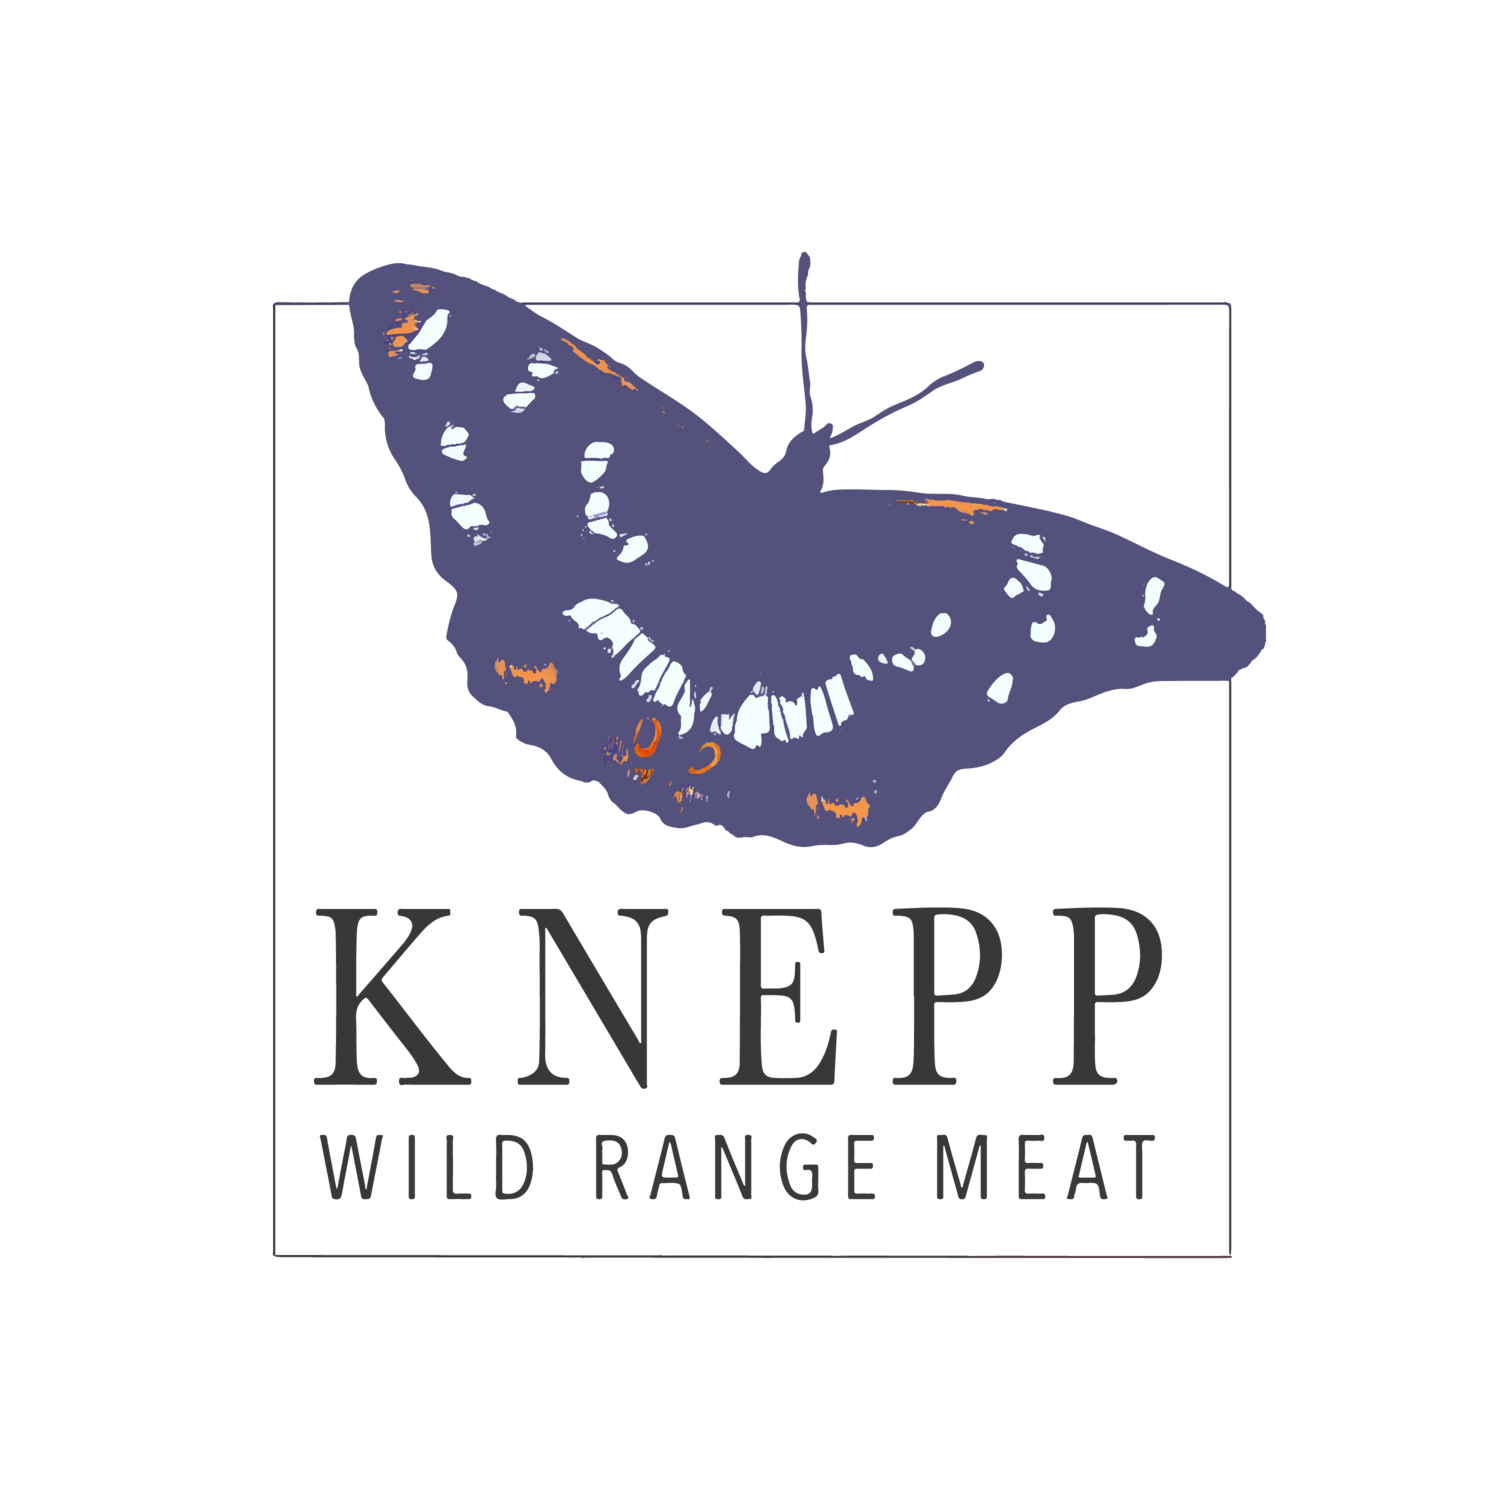 Knepp Wild Range Meat